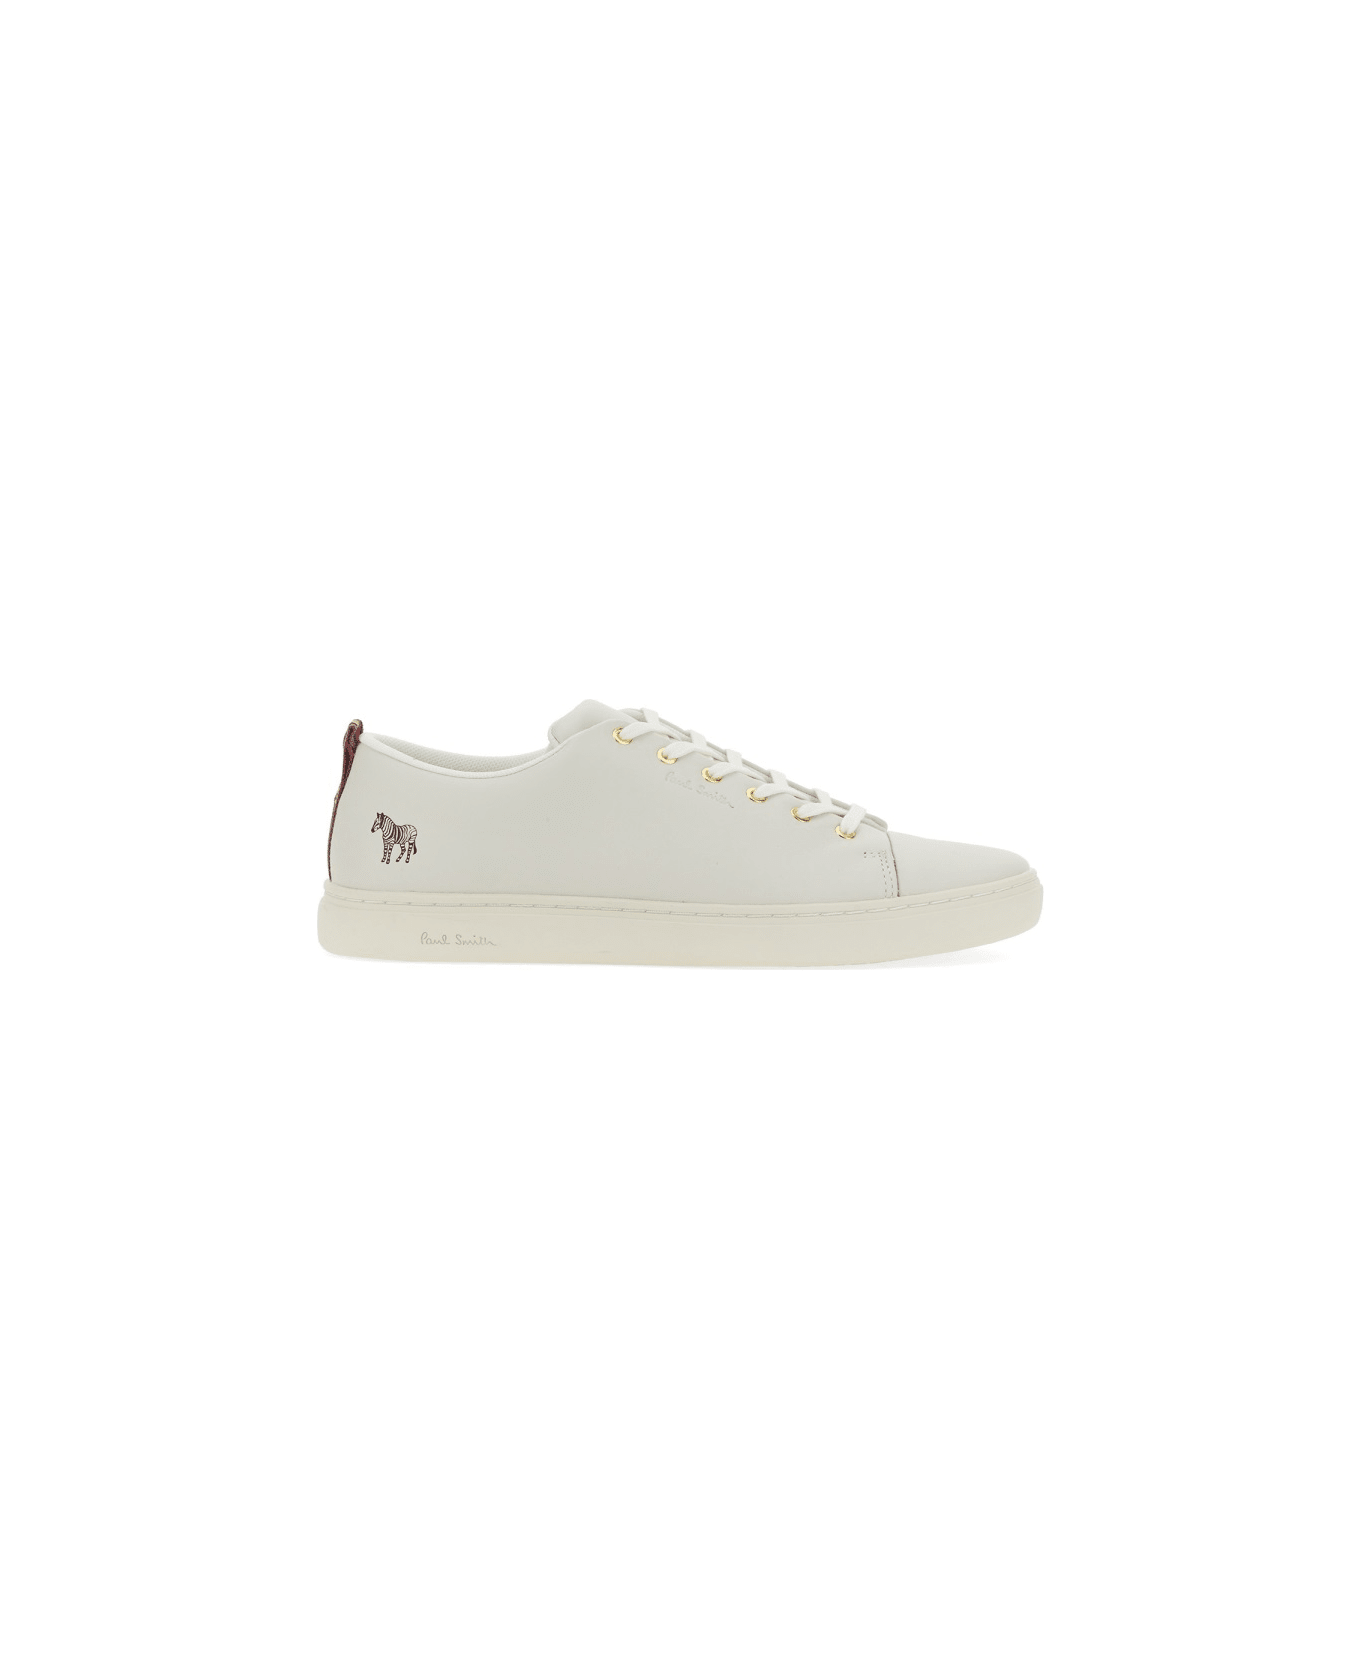 Paul Smith Sneaker "lee" - WHITE スニーカー